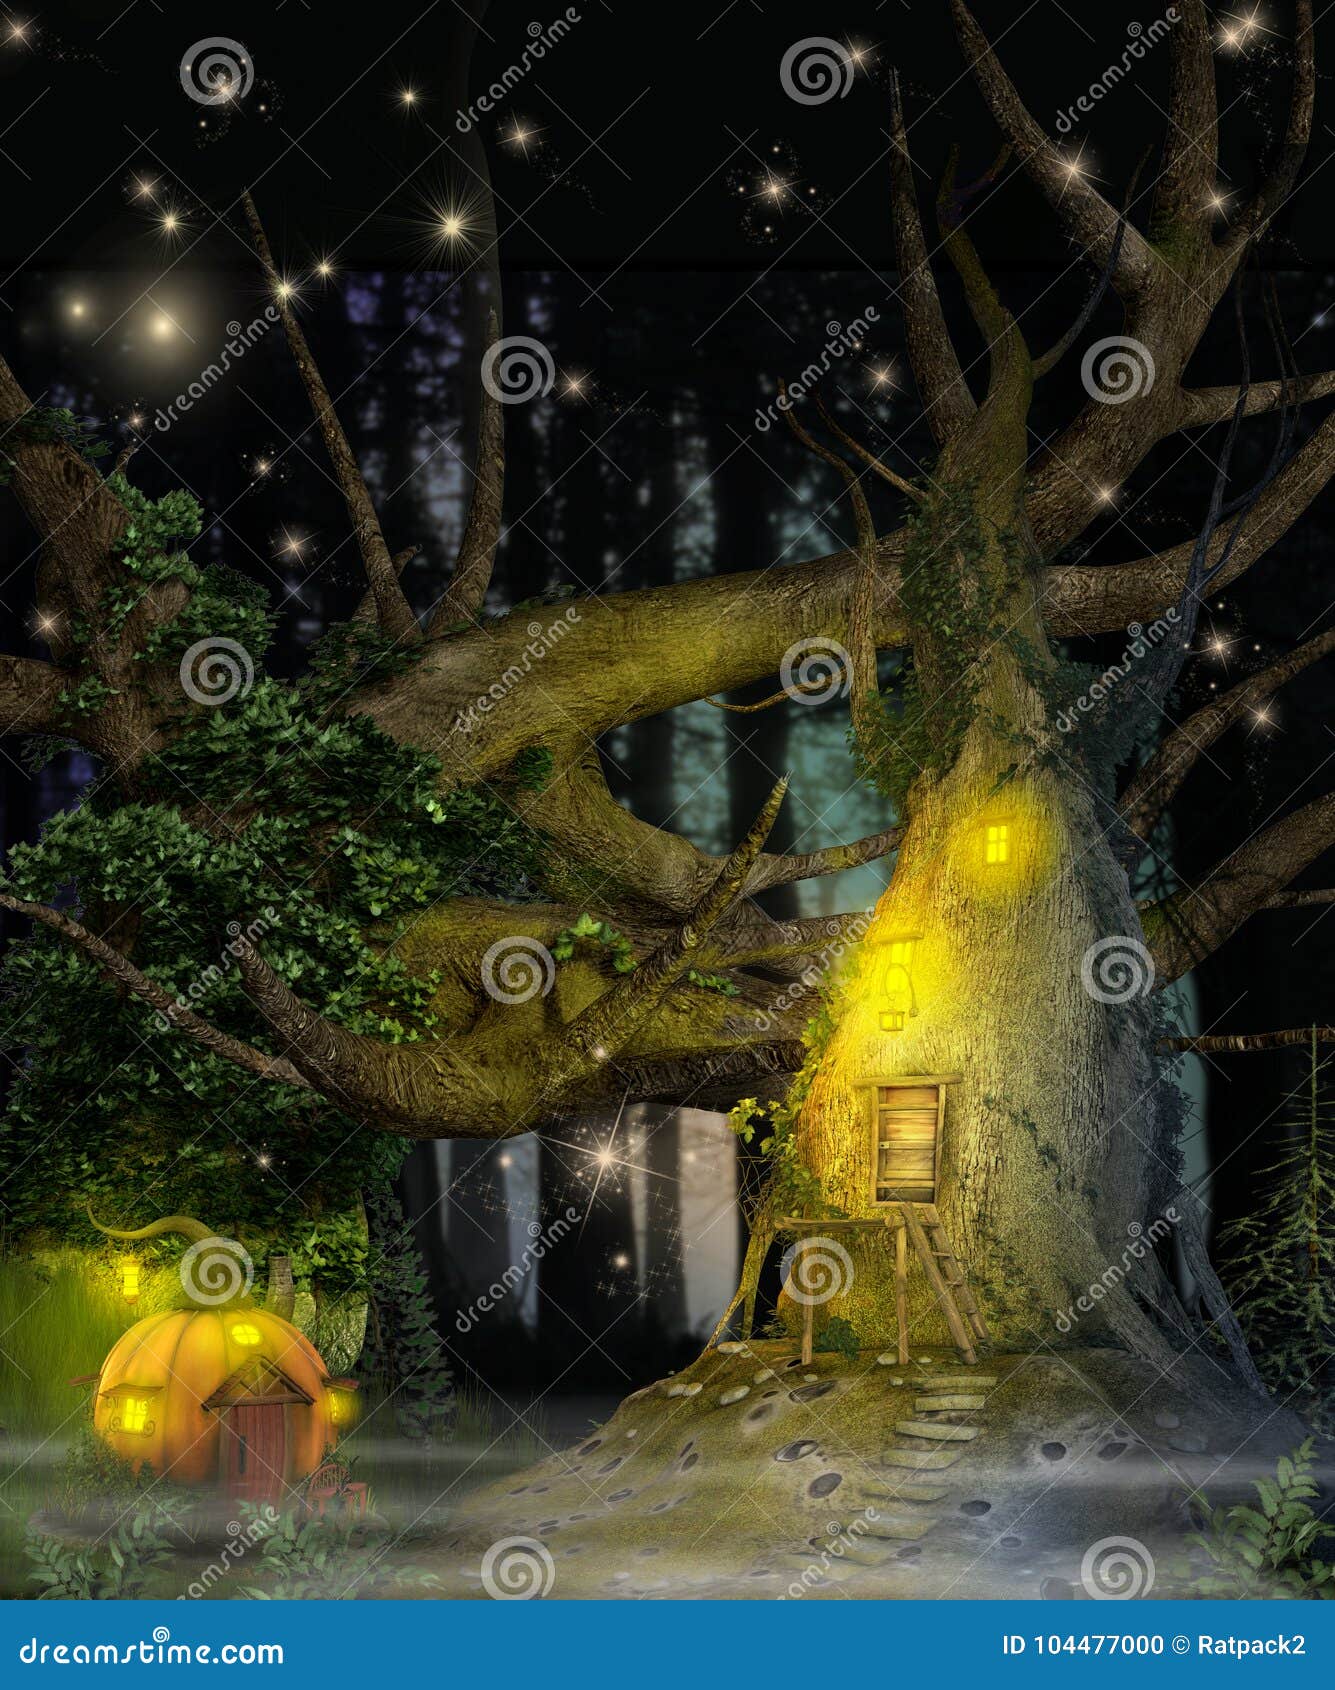 enchanting fantasy fairy tree house